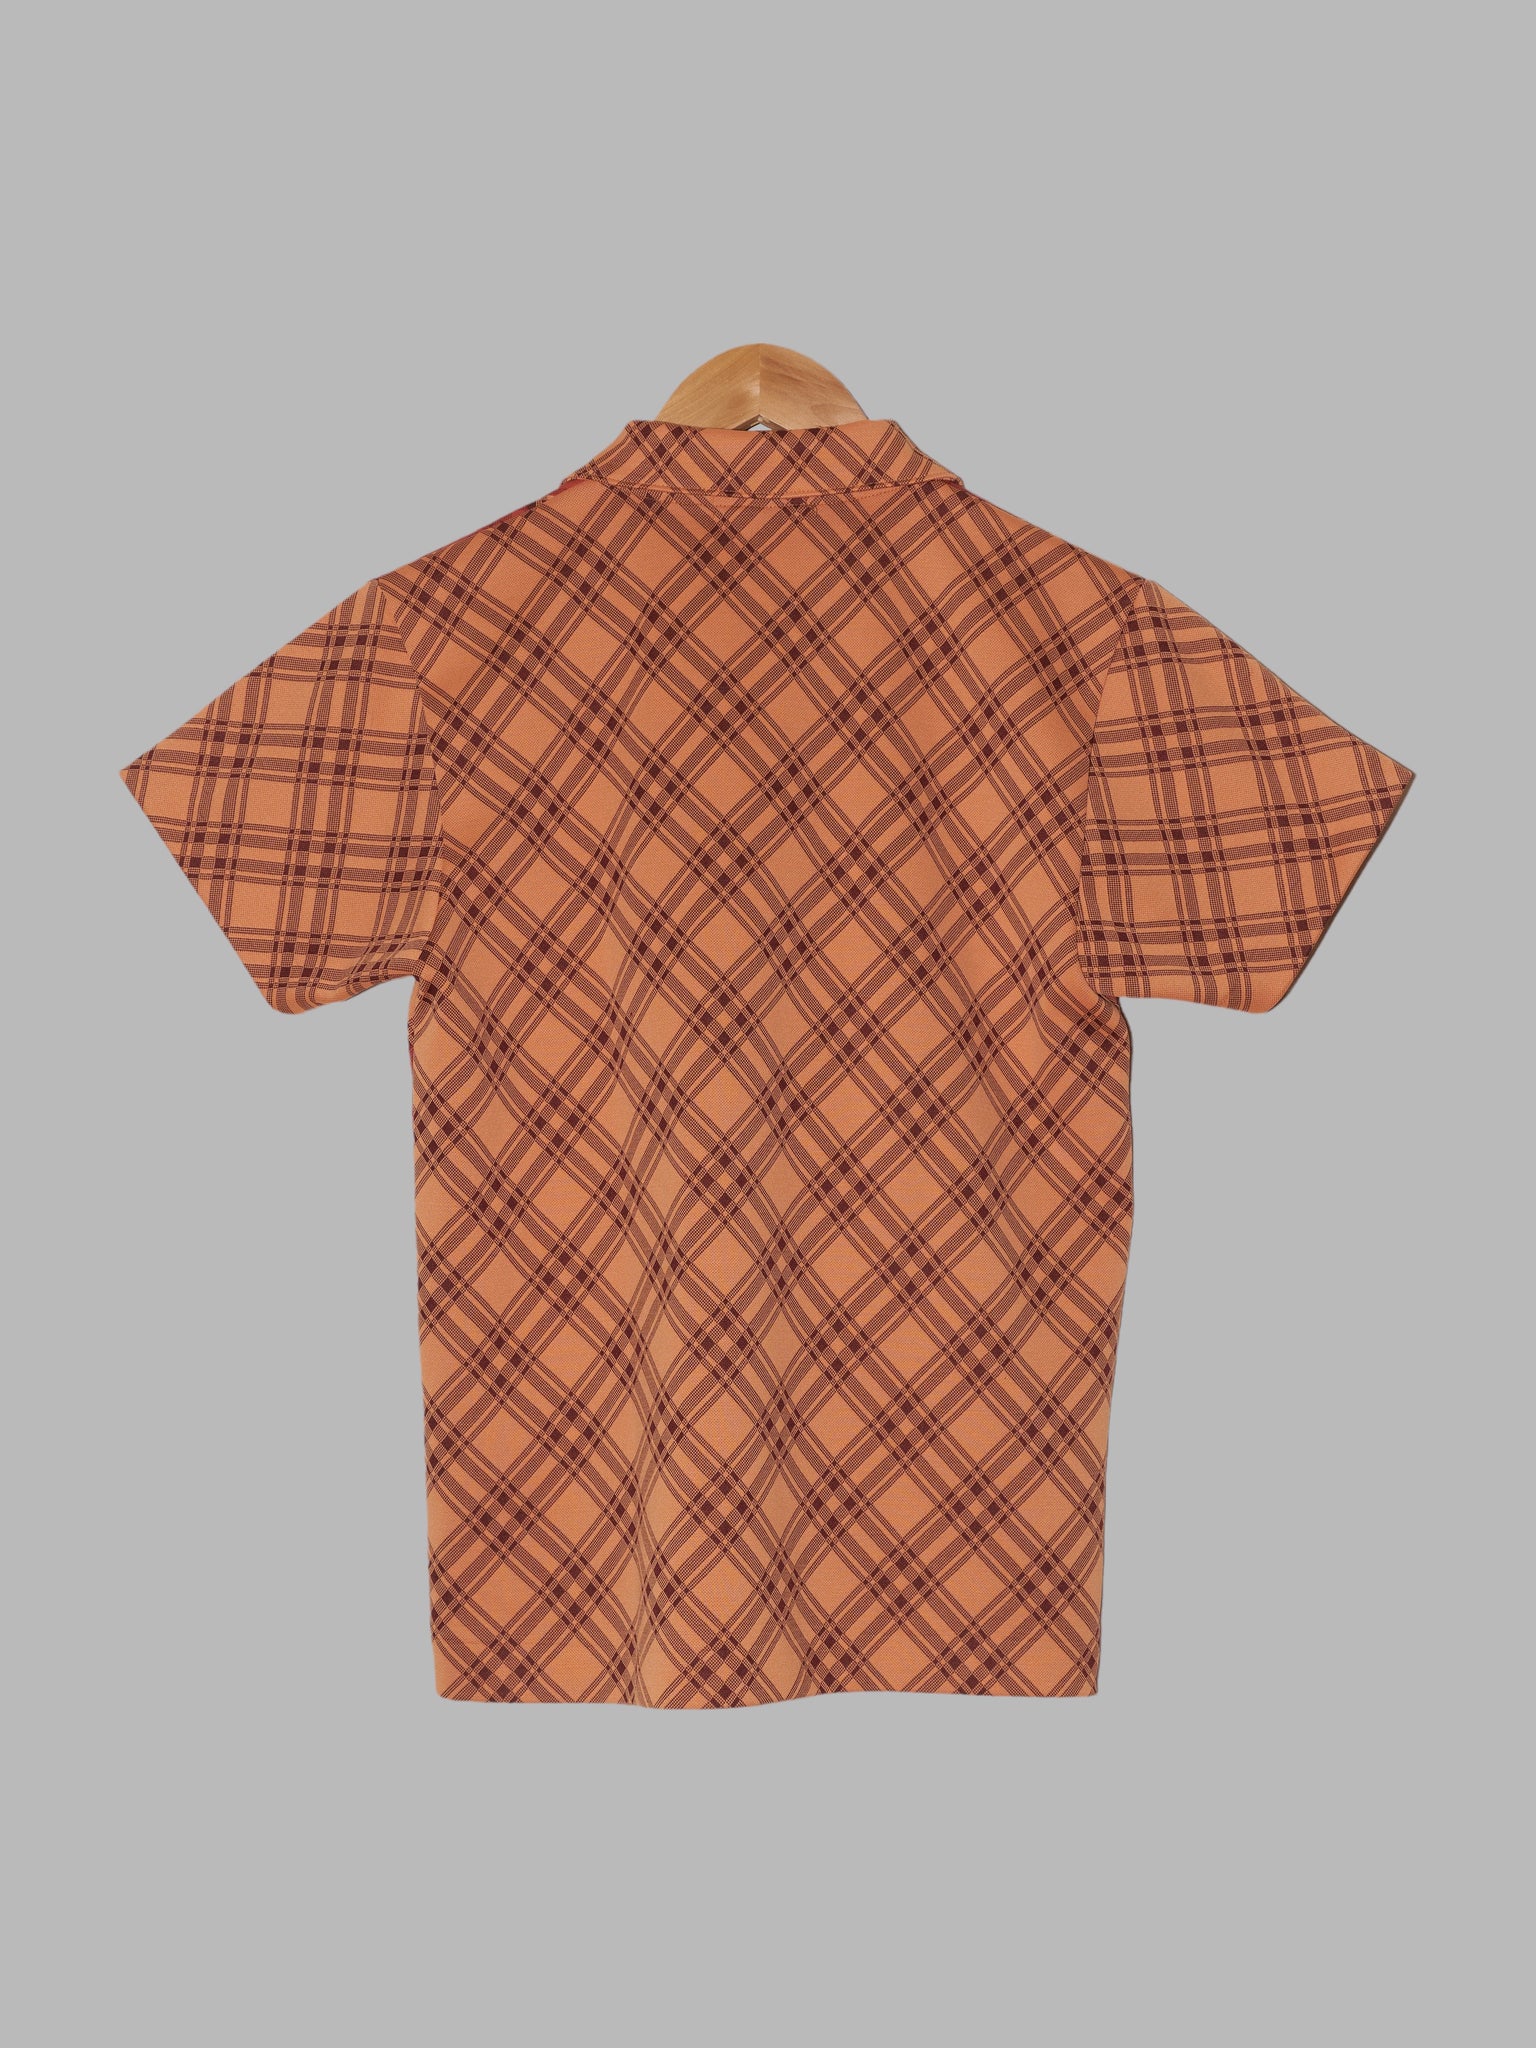 Comme des Garcons Homme Plus SS2001 orange check leaf pattern polo shirt